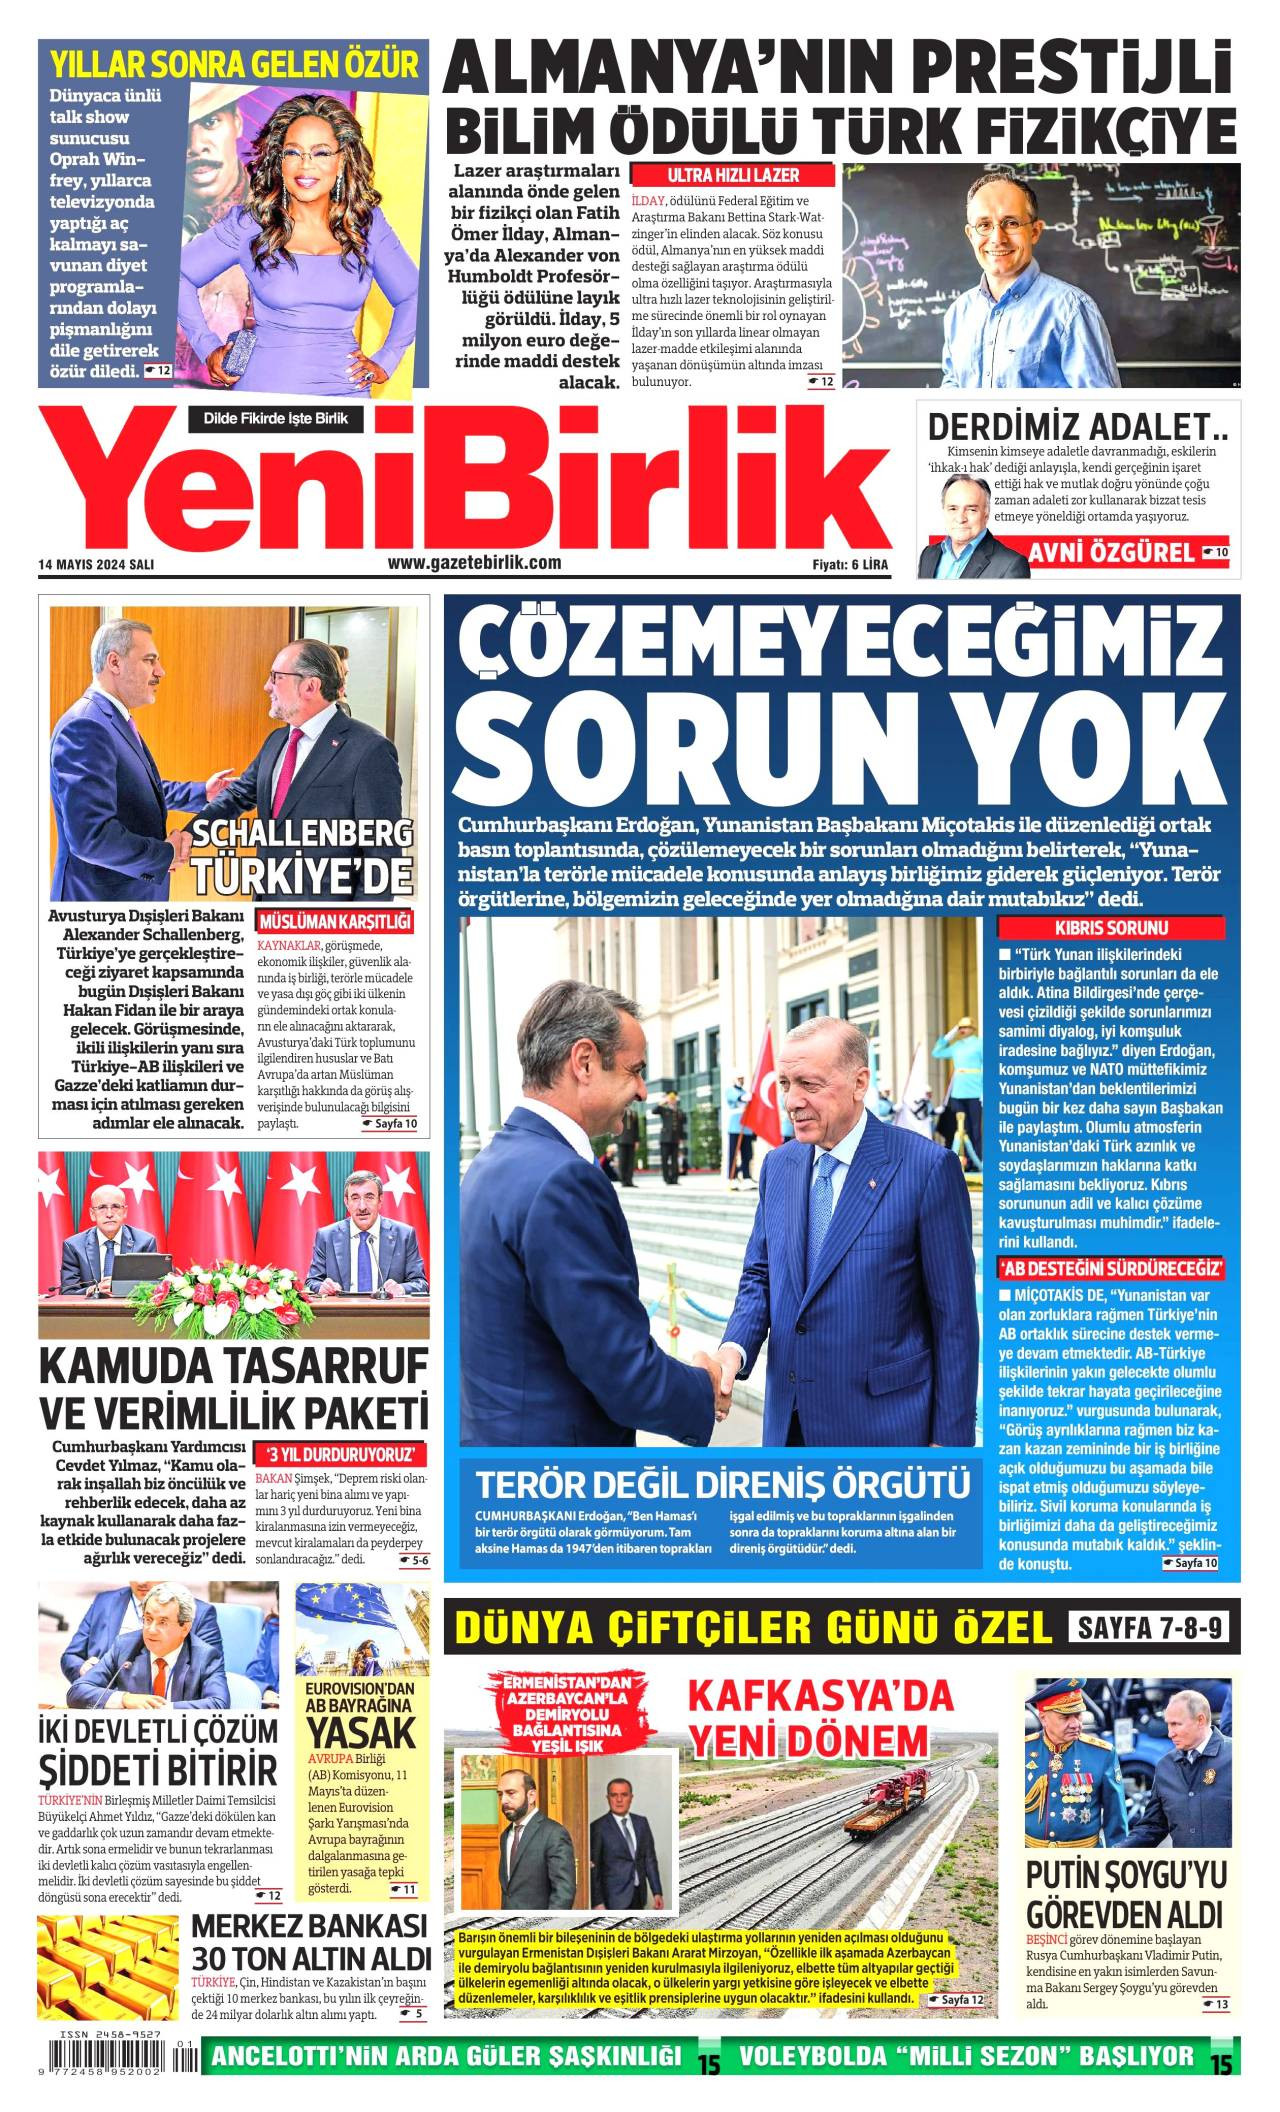 Yeni Birlik Newspaper